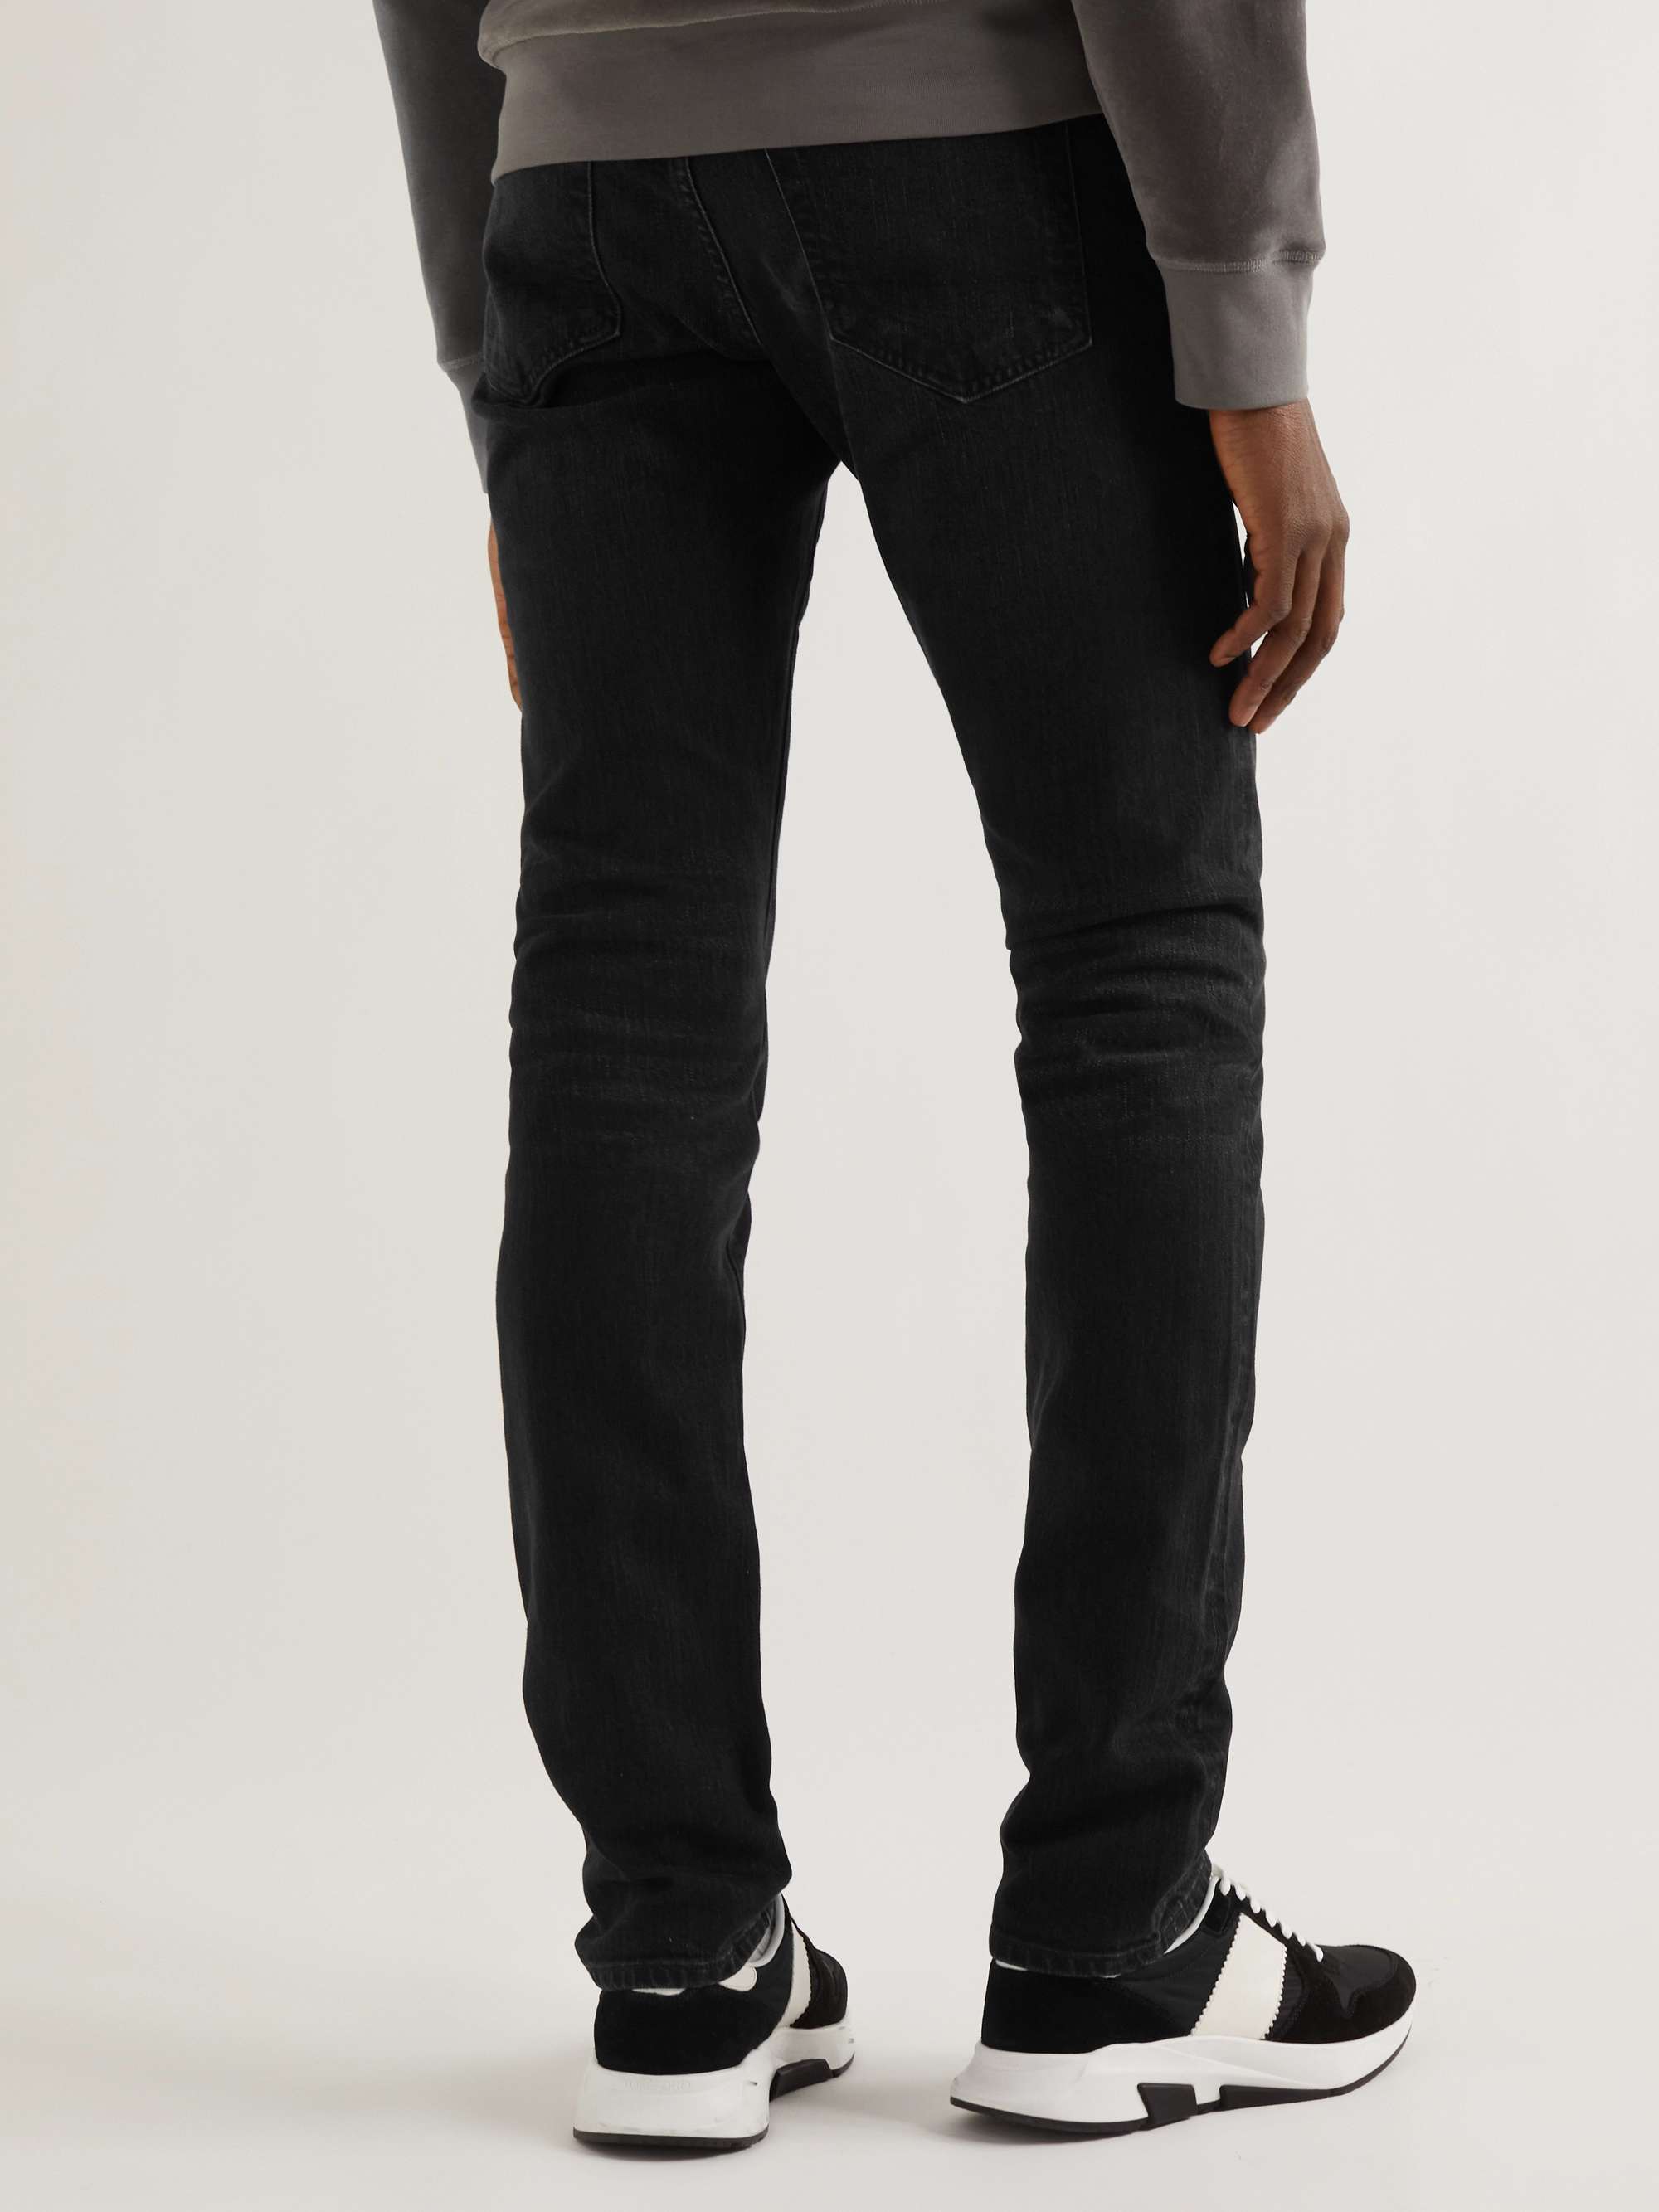 TOM FORD Slim-Fit Selvedge Jeans | MR PORTER